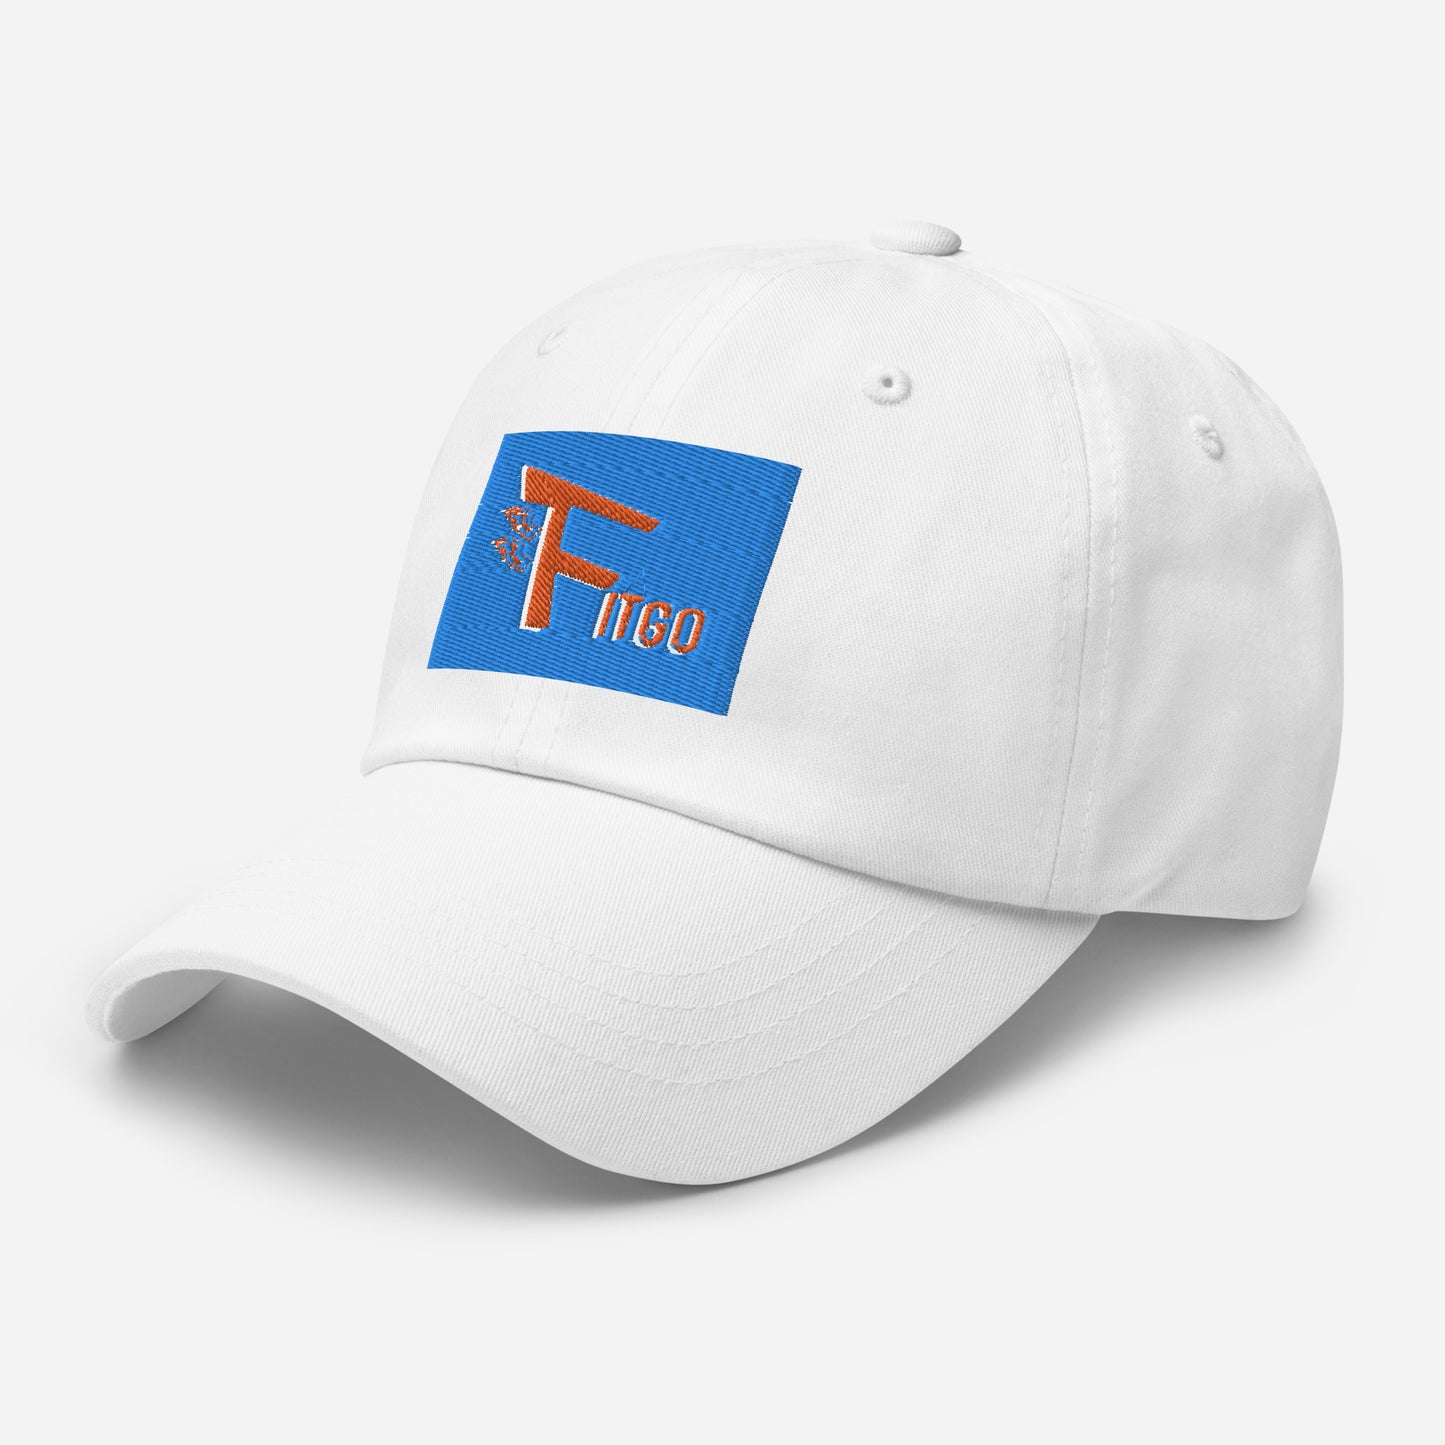 Men's Fitgo "NY" Dad hat